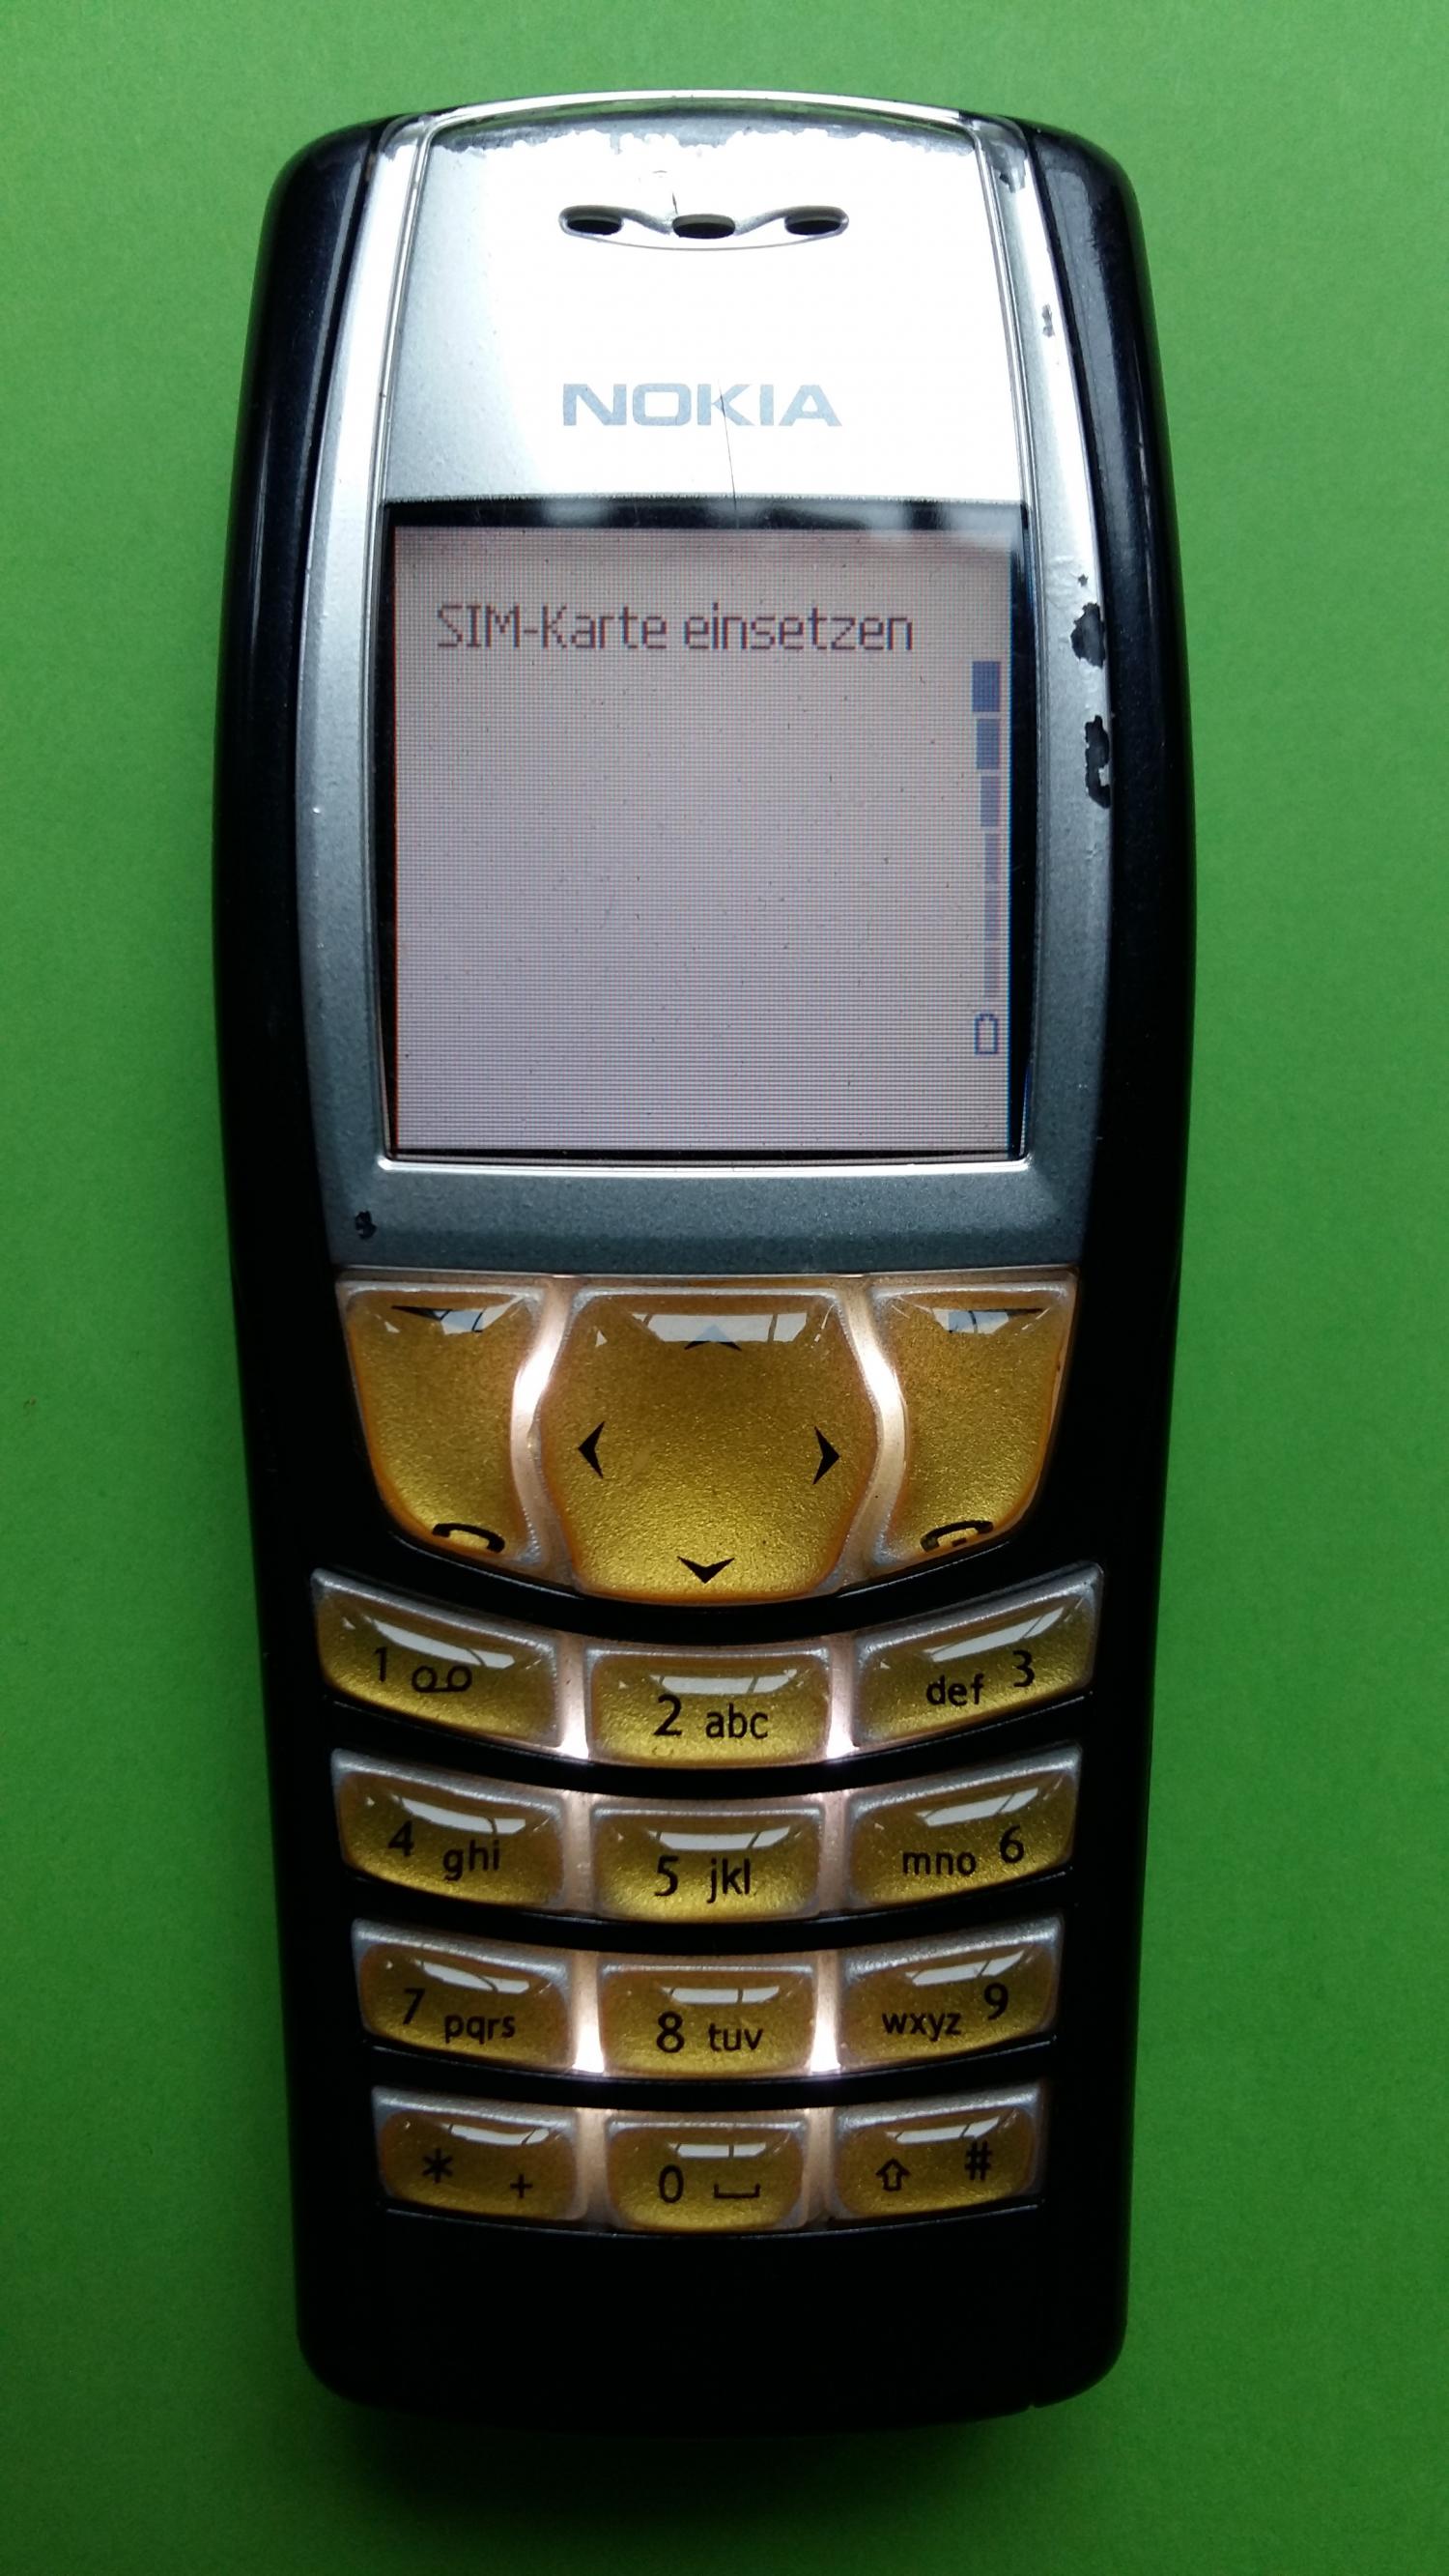 image-7333675-Nokia 6610 (6)1.jpg